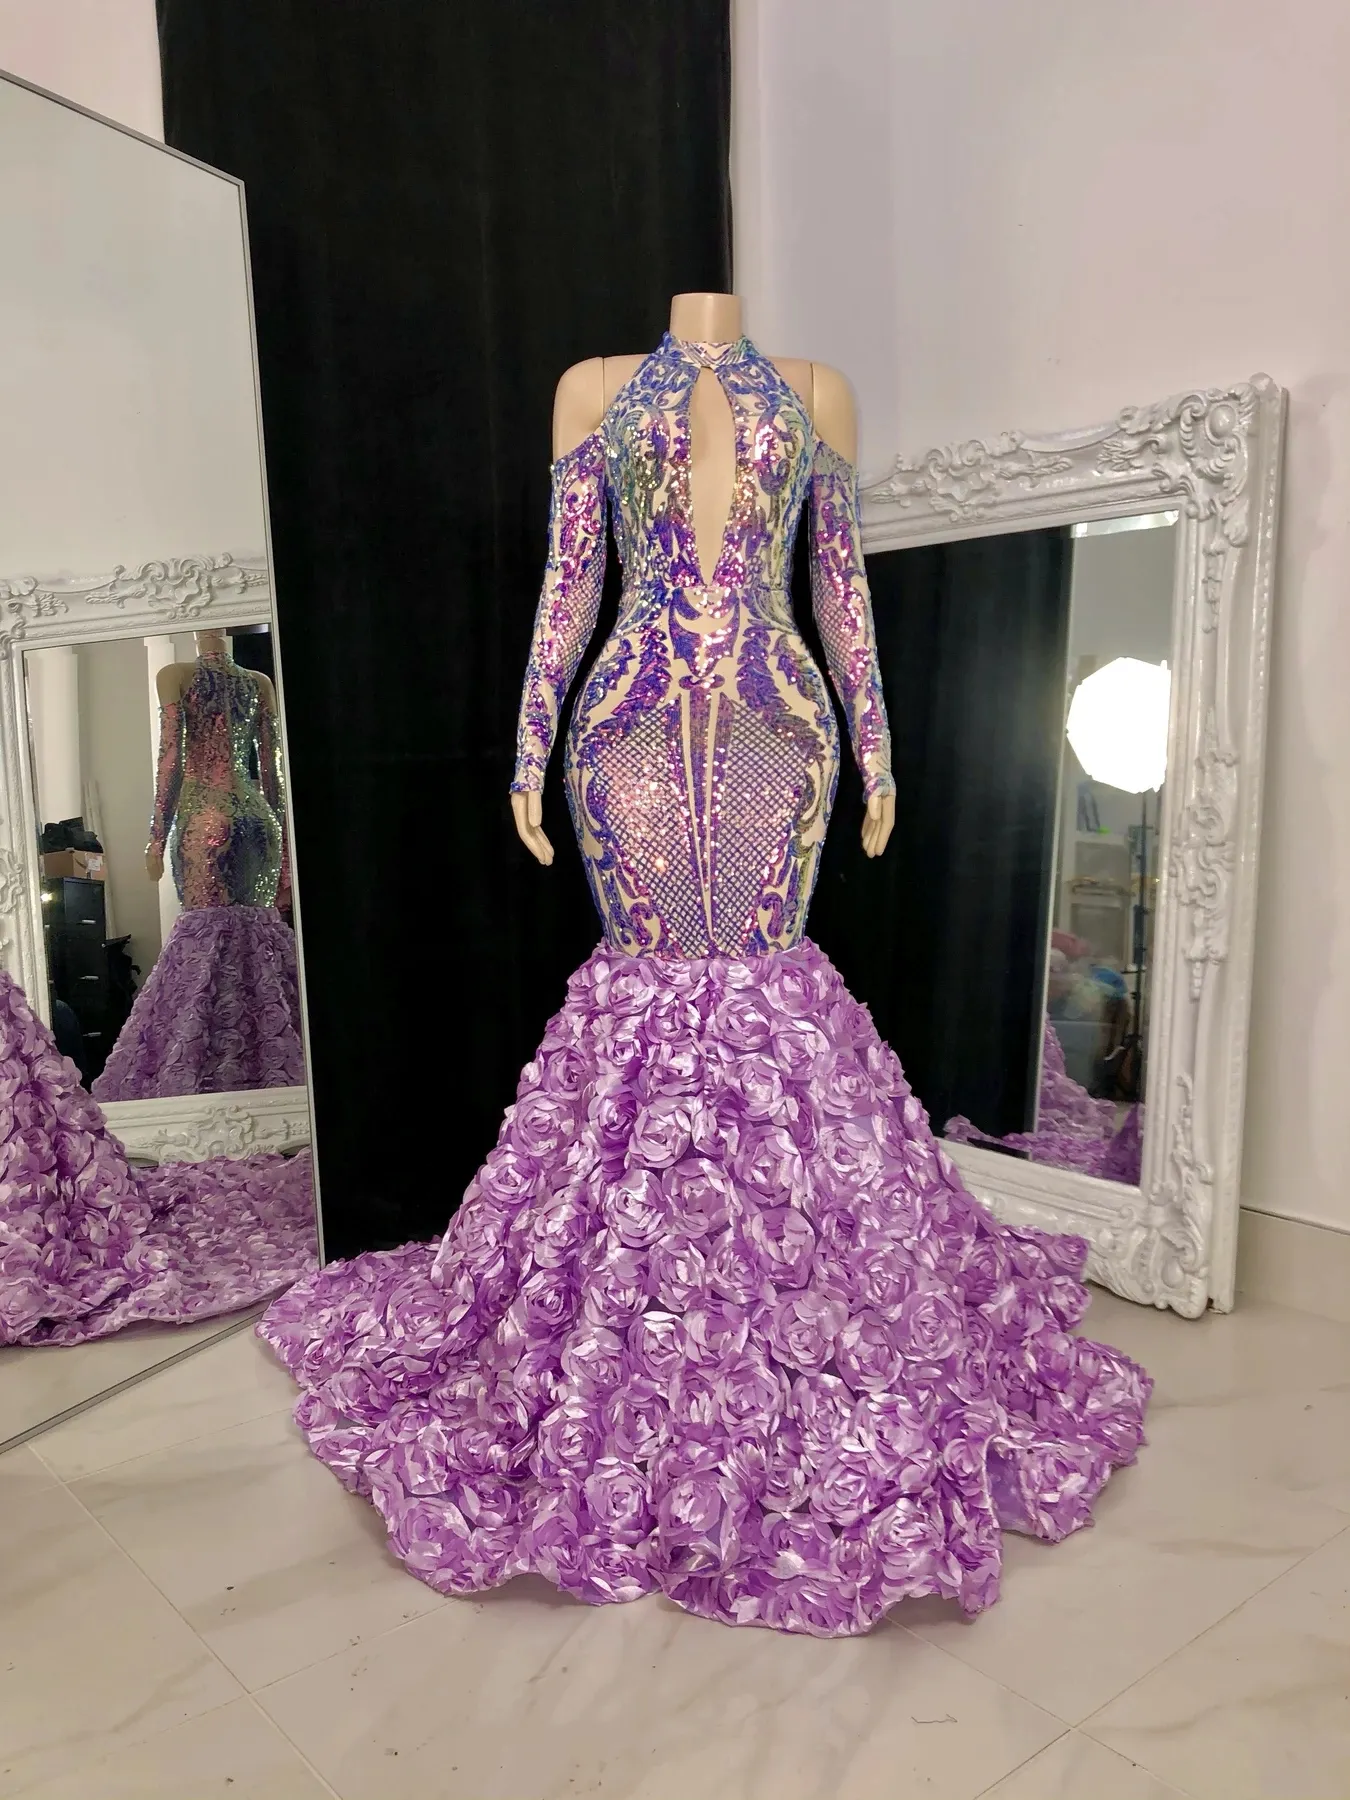 ASO EBI 스타일 2021 플러스 사이즈 아랍어 머메이드 댄스 파티 드레스 긴 소매 보라색 장식 조각 높은 넥 플라워 트레인 저녁 정식 파티 두 번째 리셉션 가운 드레스